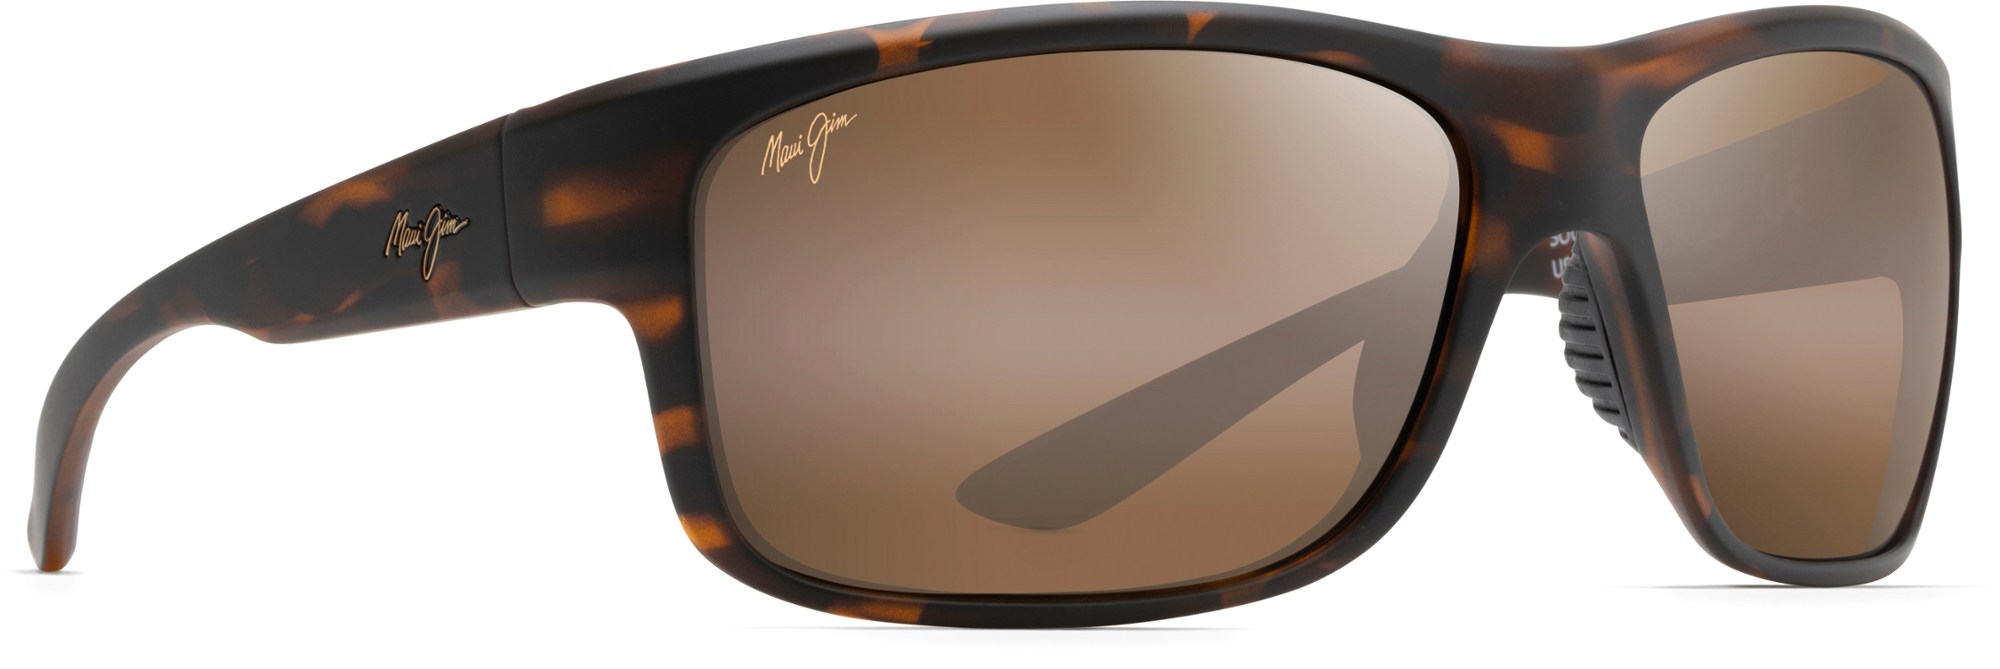 цена Поляризованные солнцезащитные очки Southern Cross Maui Jim, коричневый